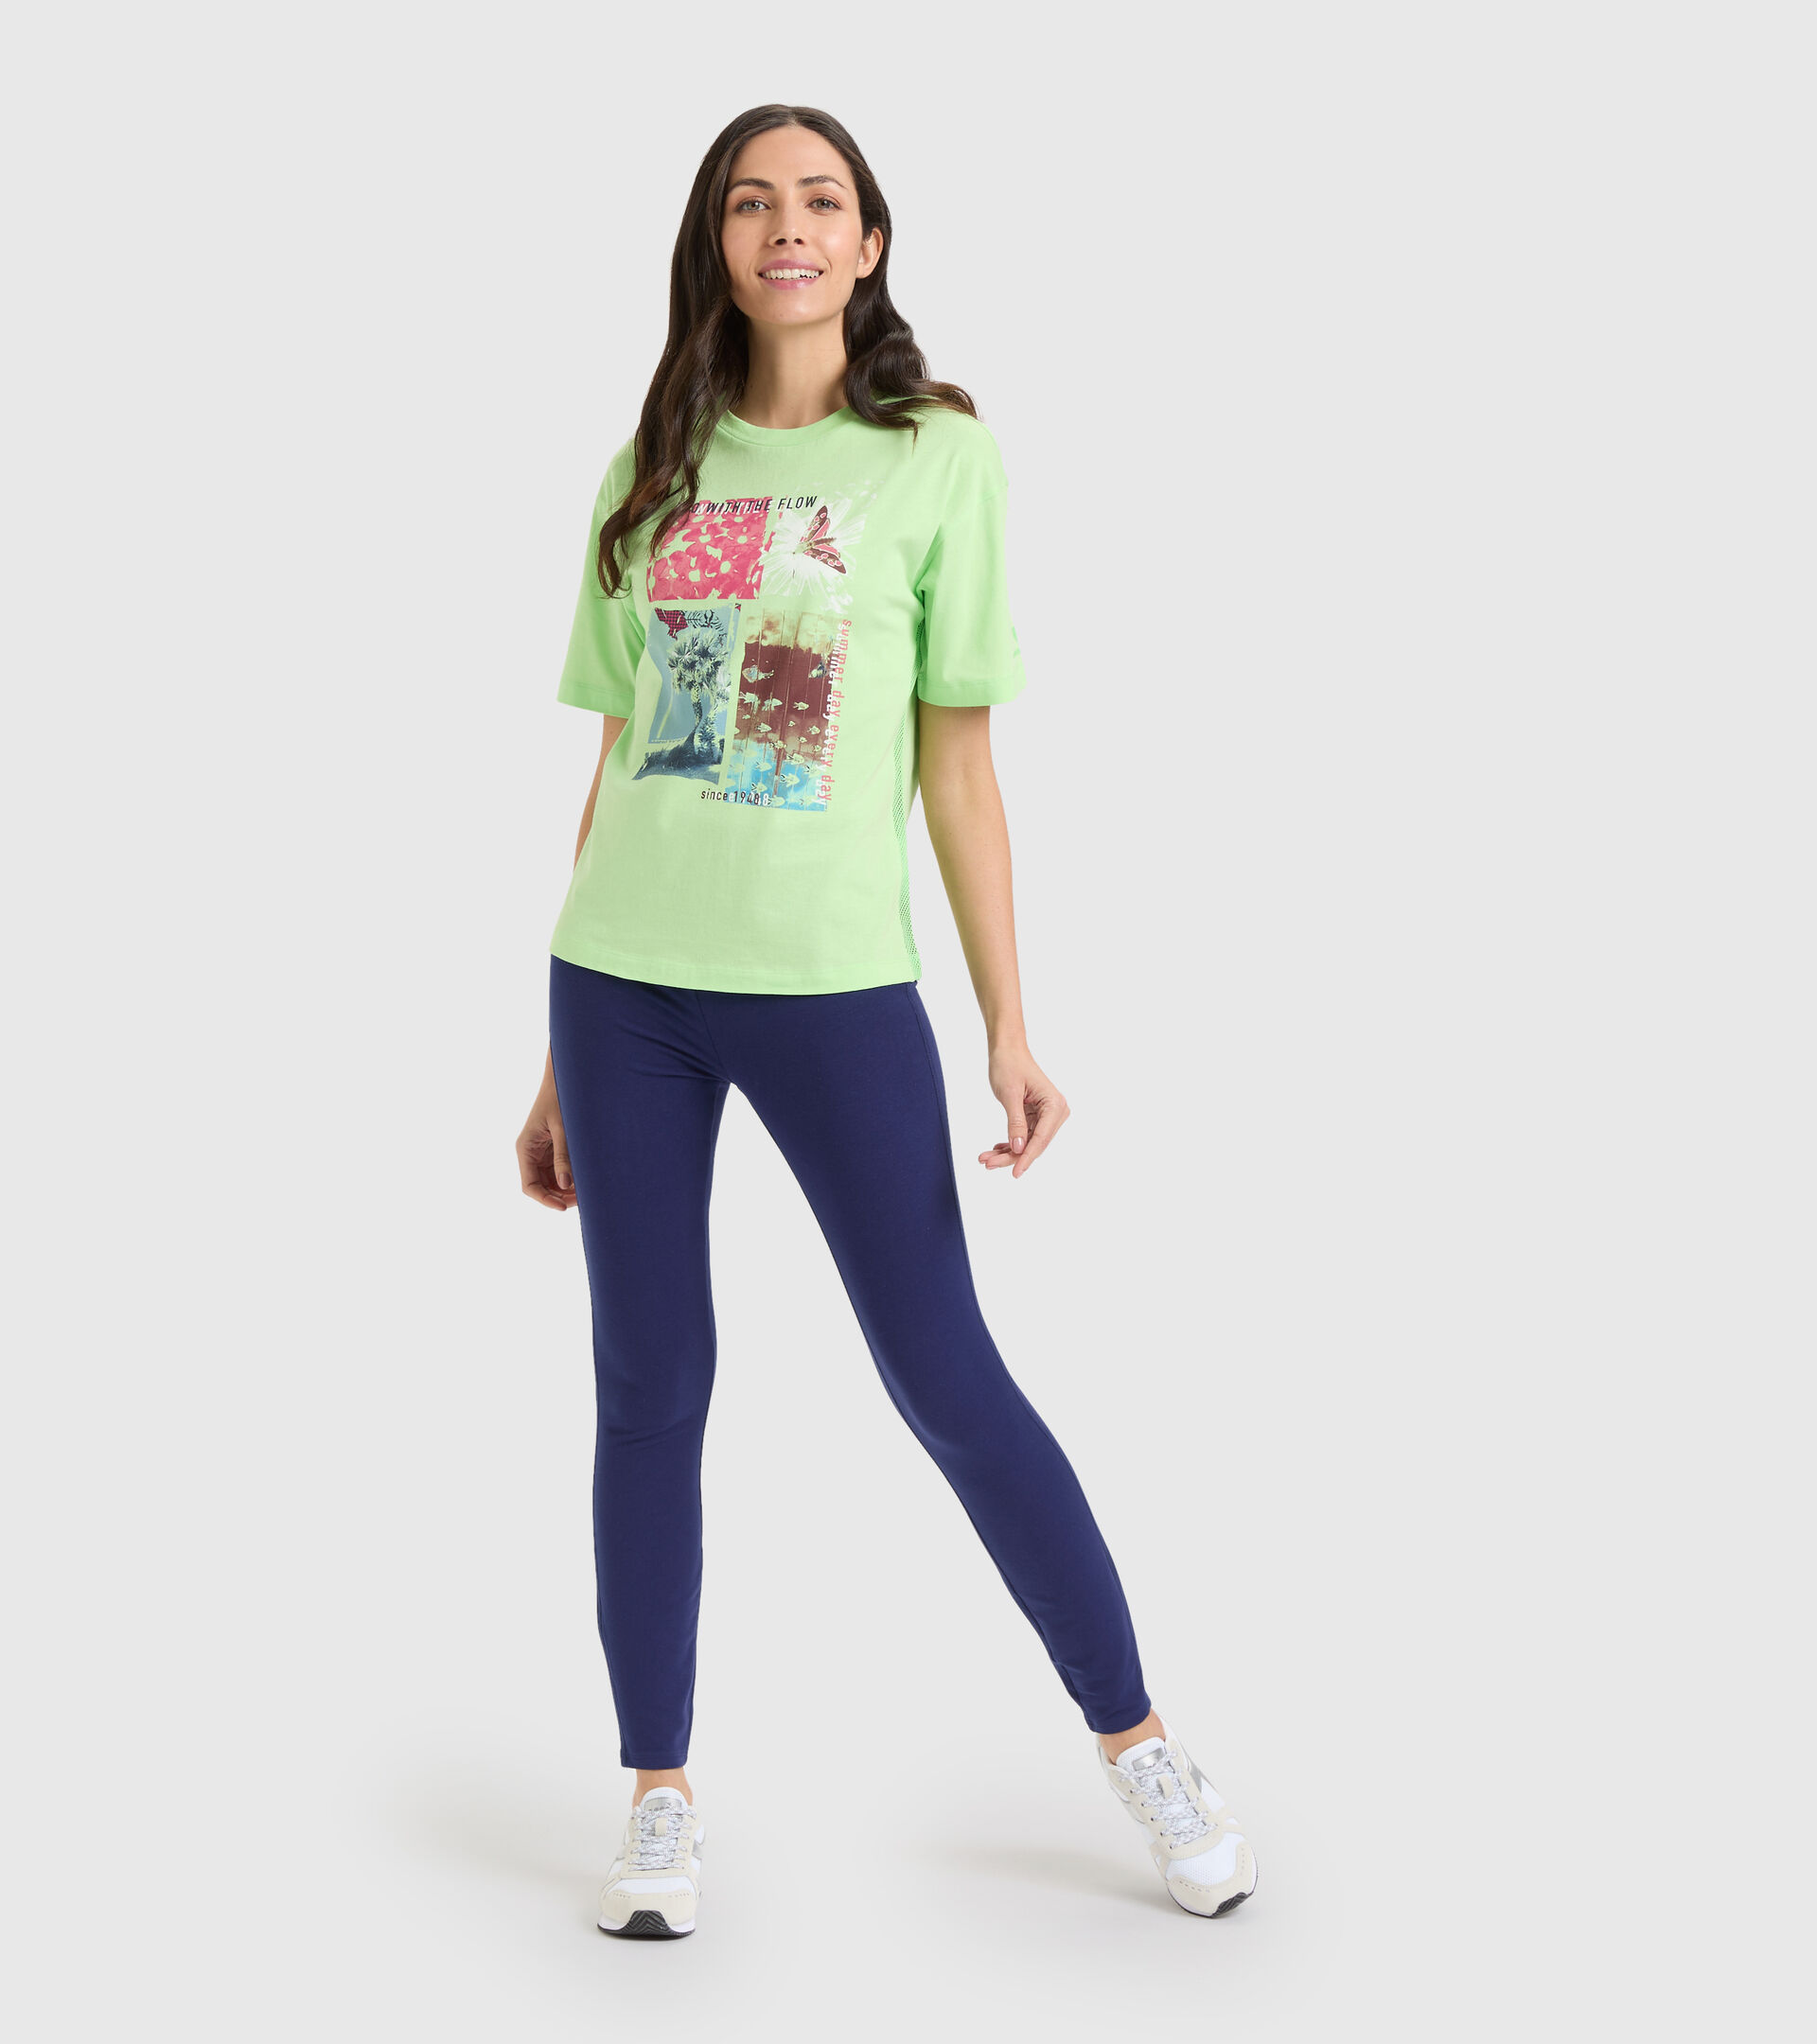 Camiseta deportiva de algodón - Mujer L. T-SHIRT SS FLOW VERDE PARAISO - Diadora